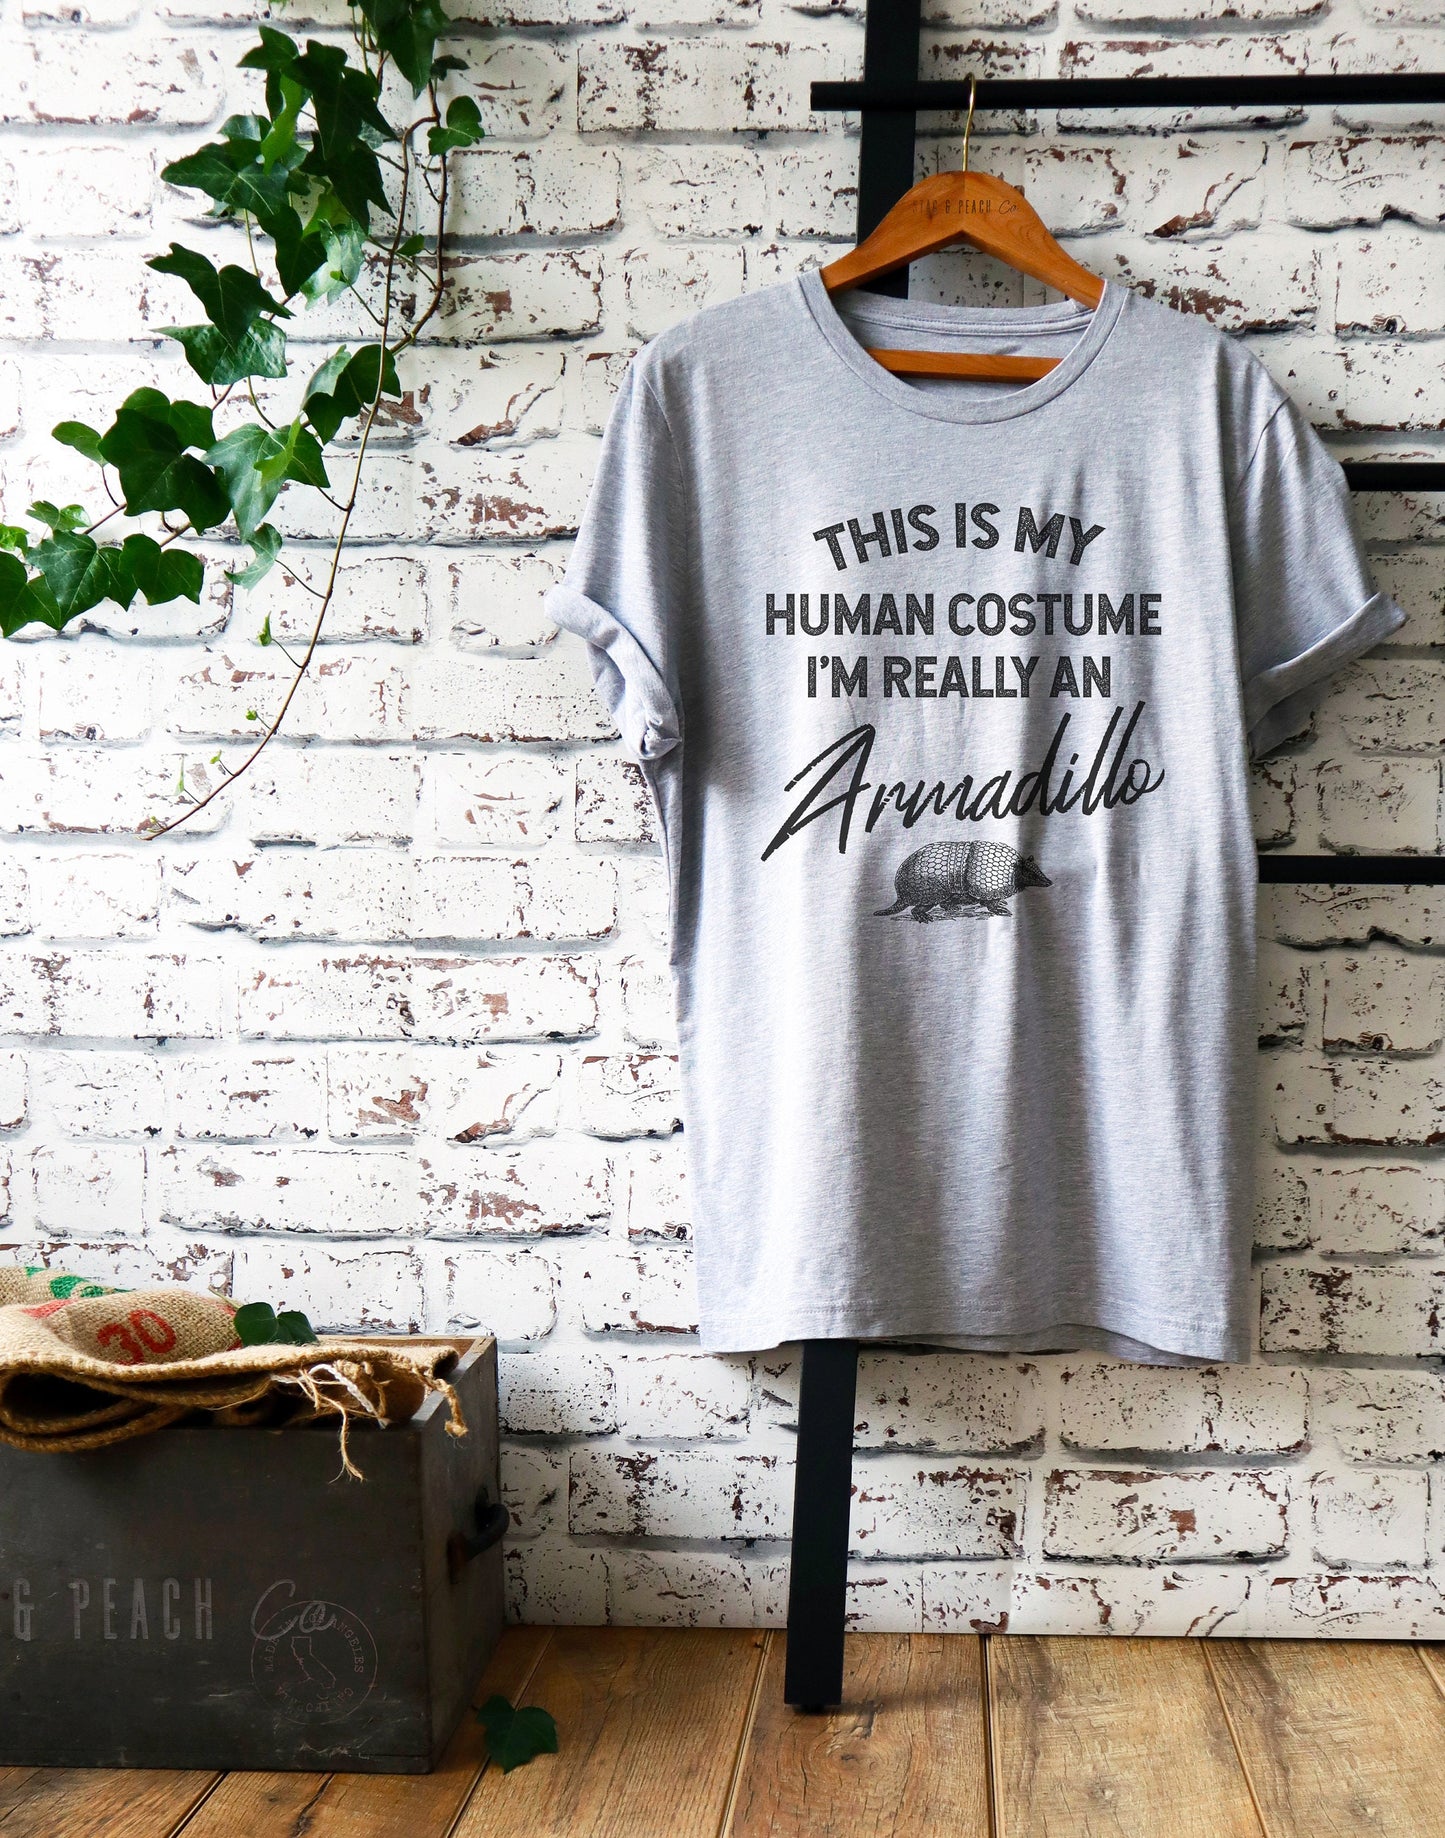 Armadillo Shirt/Tank Top/Hoodie - Armadillo Gift, Armadillo Lover TShirt, Armadillo Tees, Zoologist Shirt, I’m Really An Armadillo Shirt